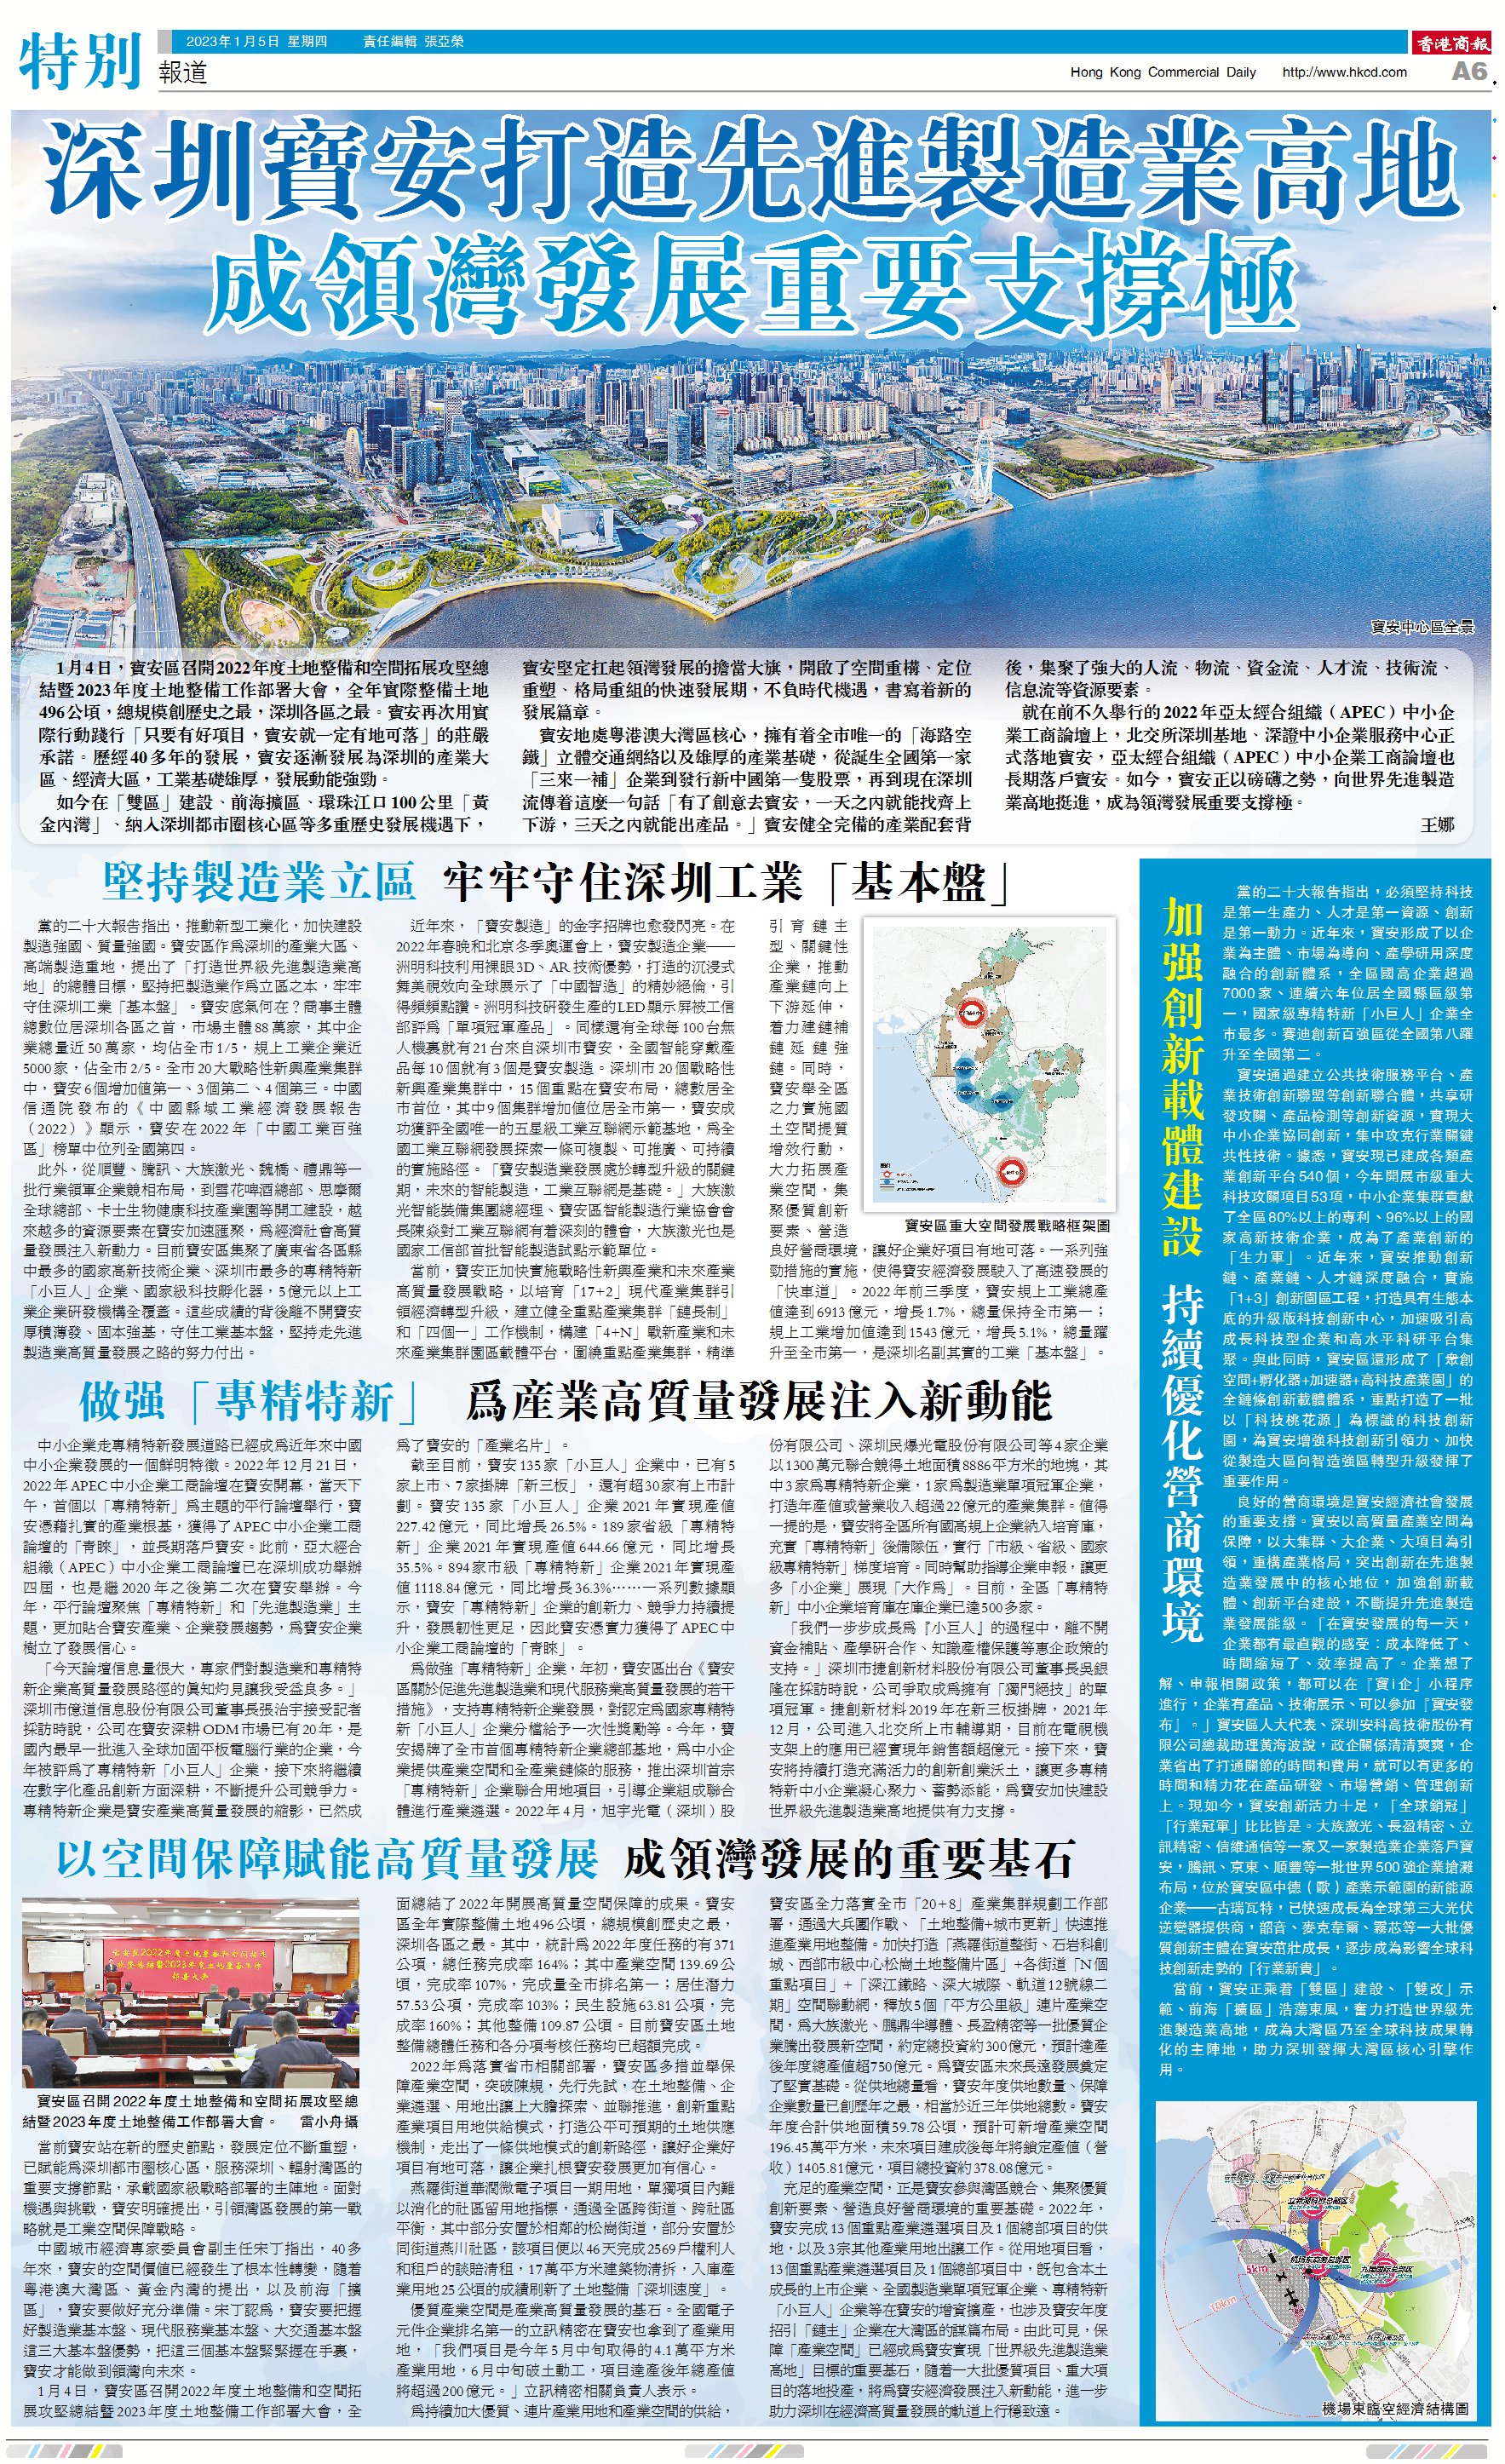 深圳寶安打造先進製造業高地 成領灣發展重要支撐極